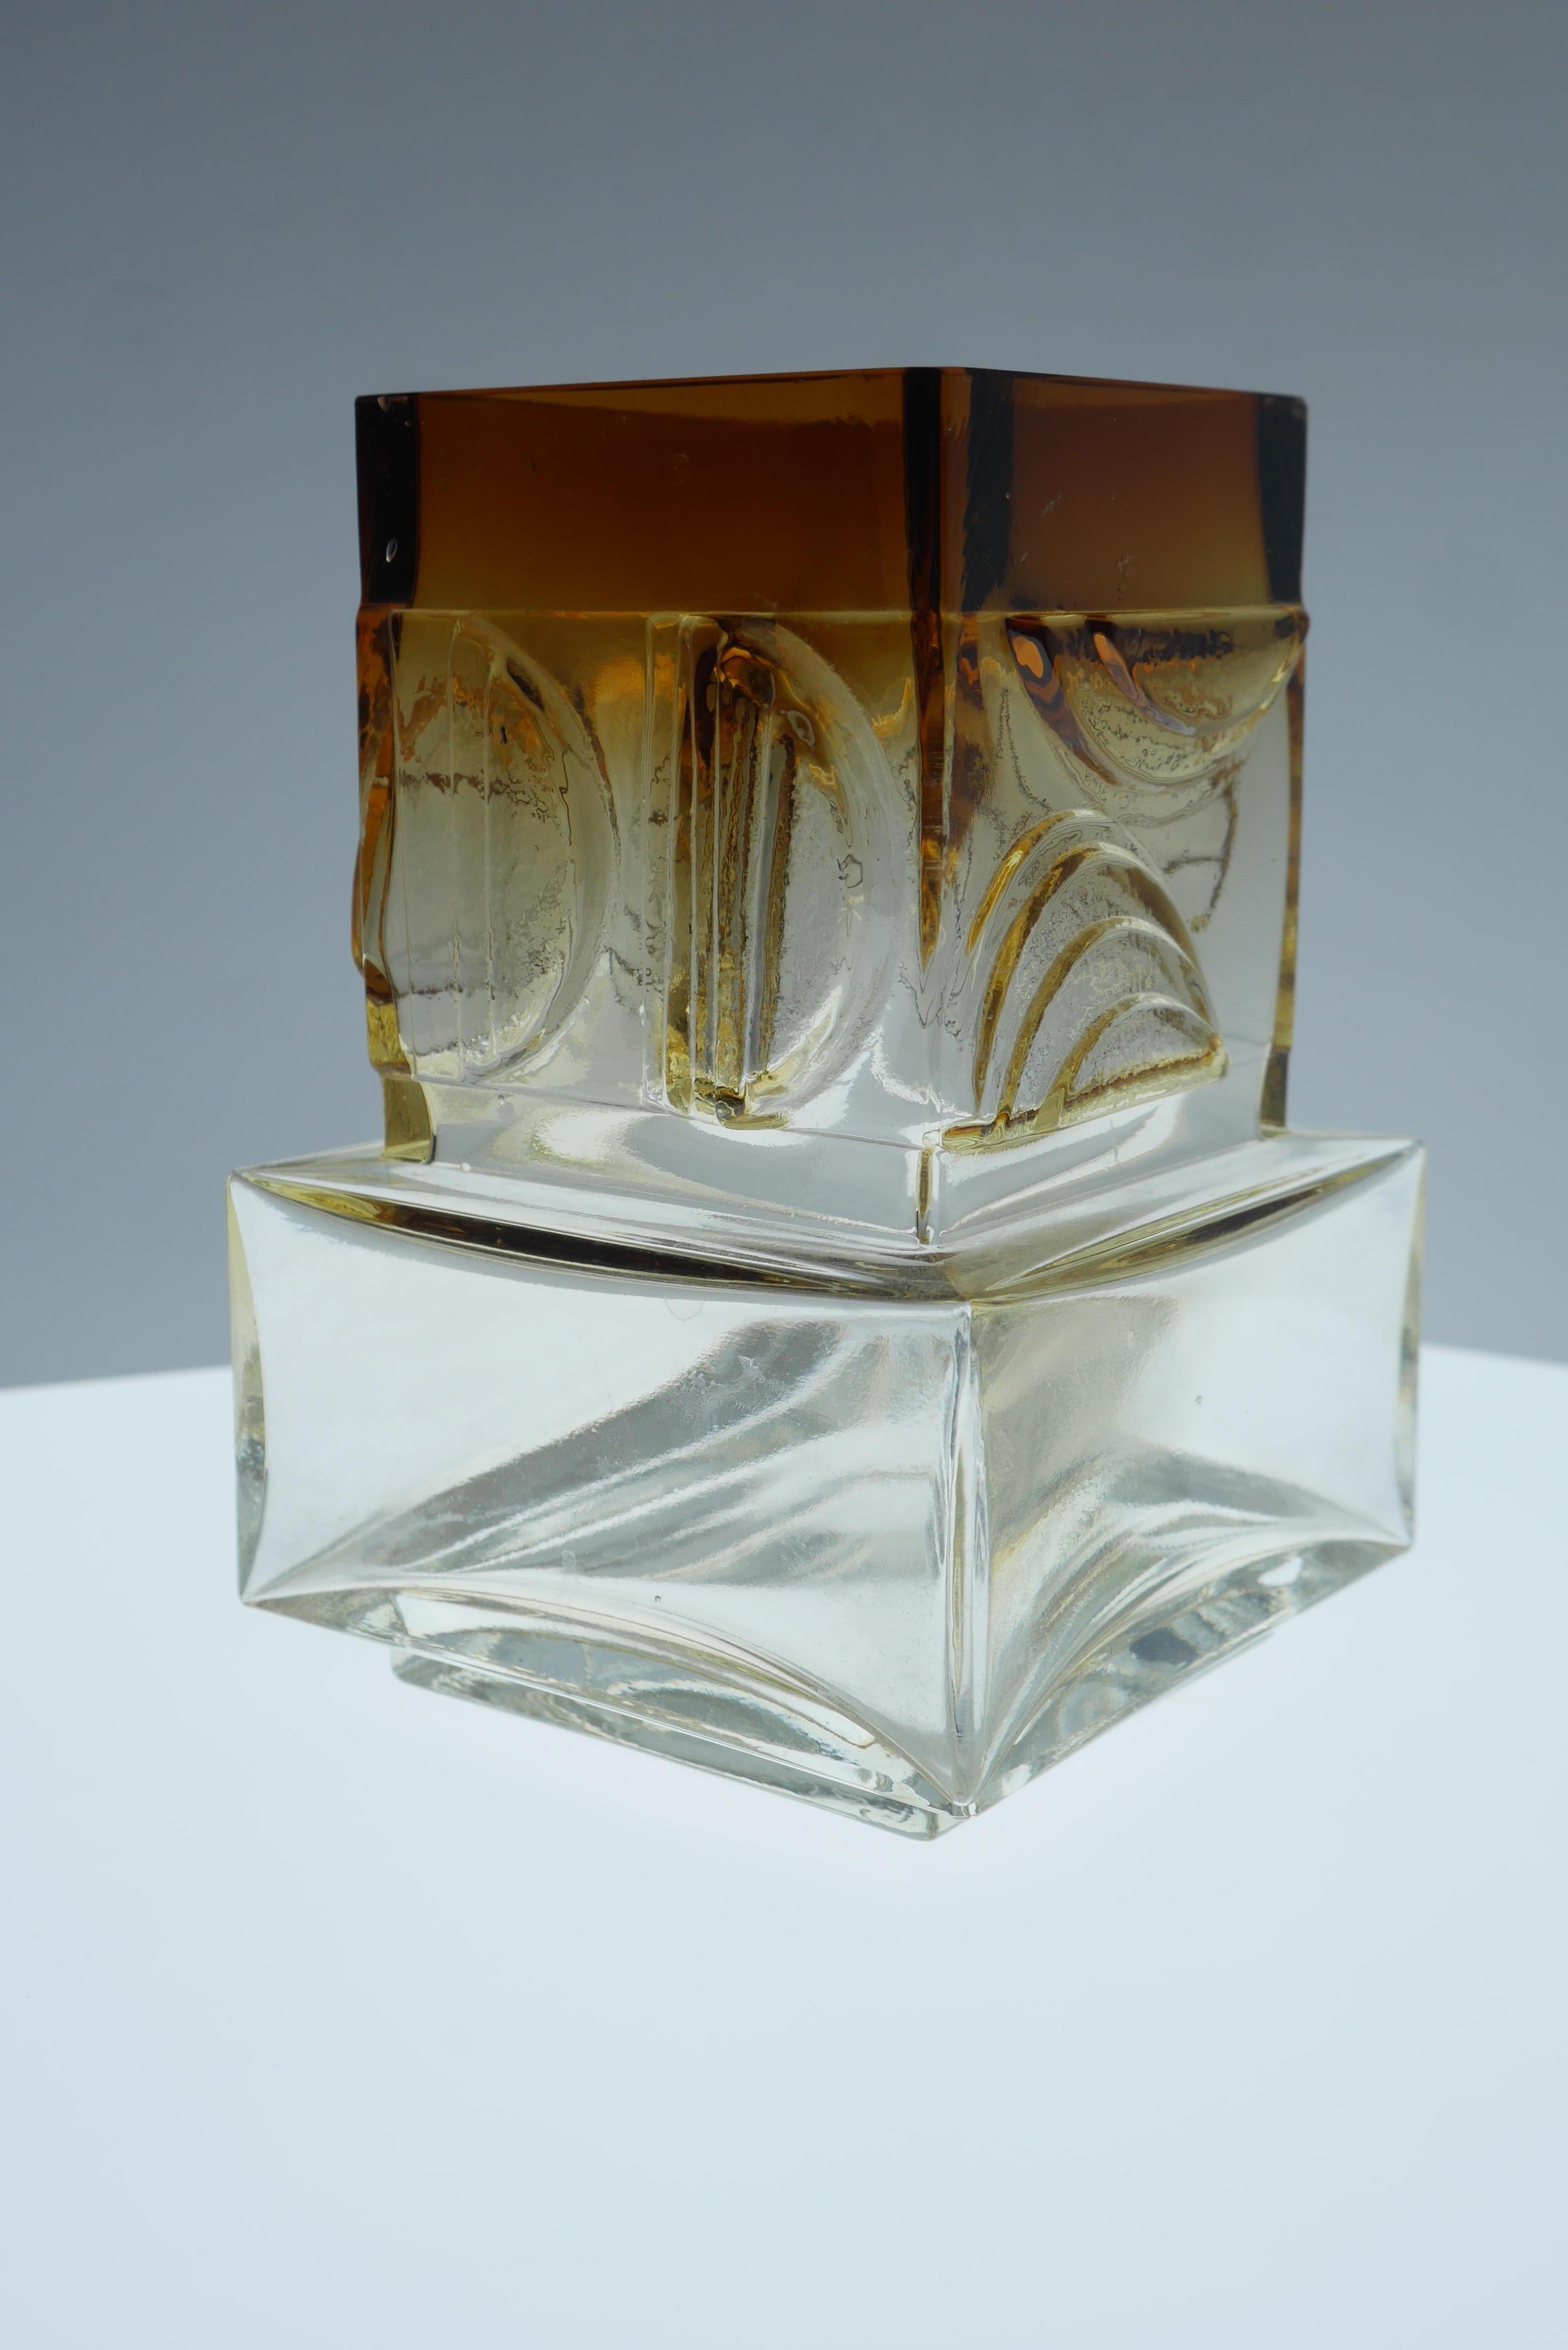 Une pièce typiquement finlandaise des années 1960 de Pentti Sarpaneva, de la verrerie Oy Kumela pour Torun Hopea. Le verre est coloré d'un sépia profond qui s'estompe au fur et à mesure qu'il descend dans le vase. Signé. Ce vase donnera une